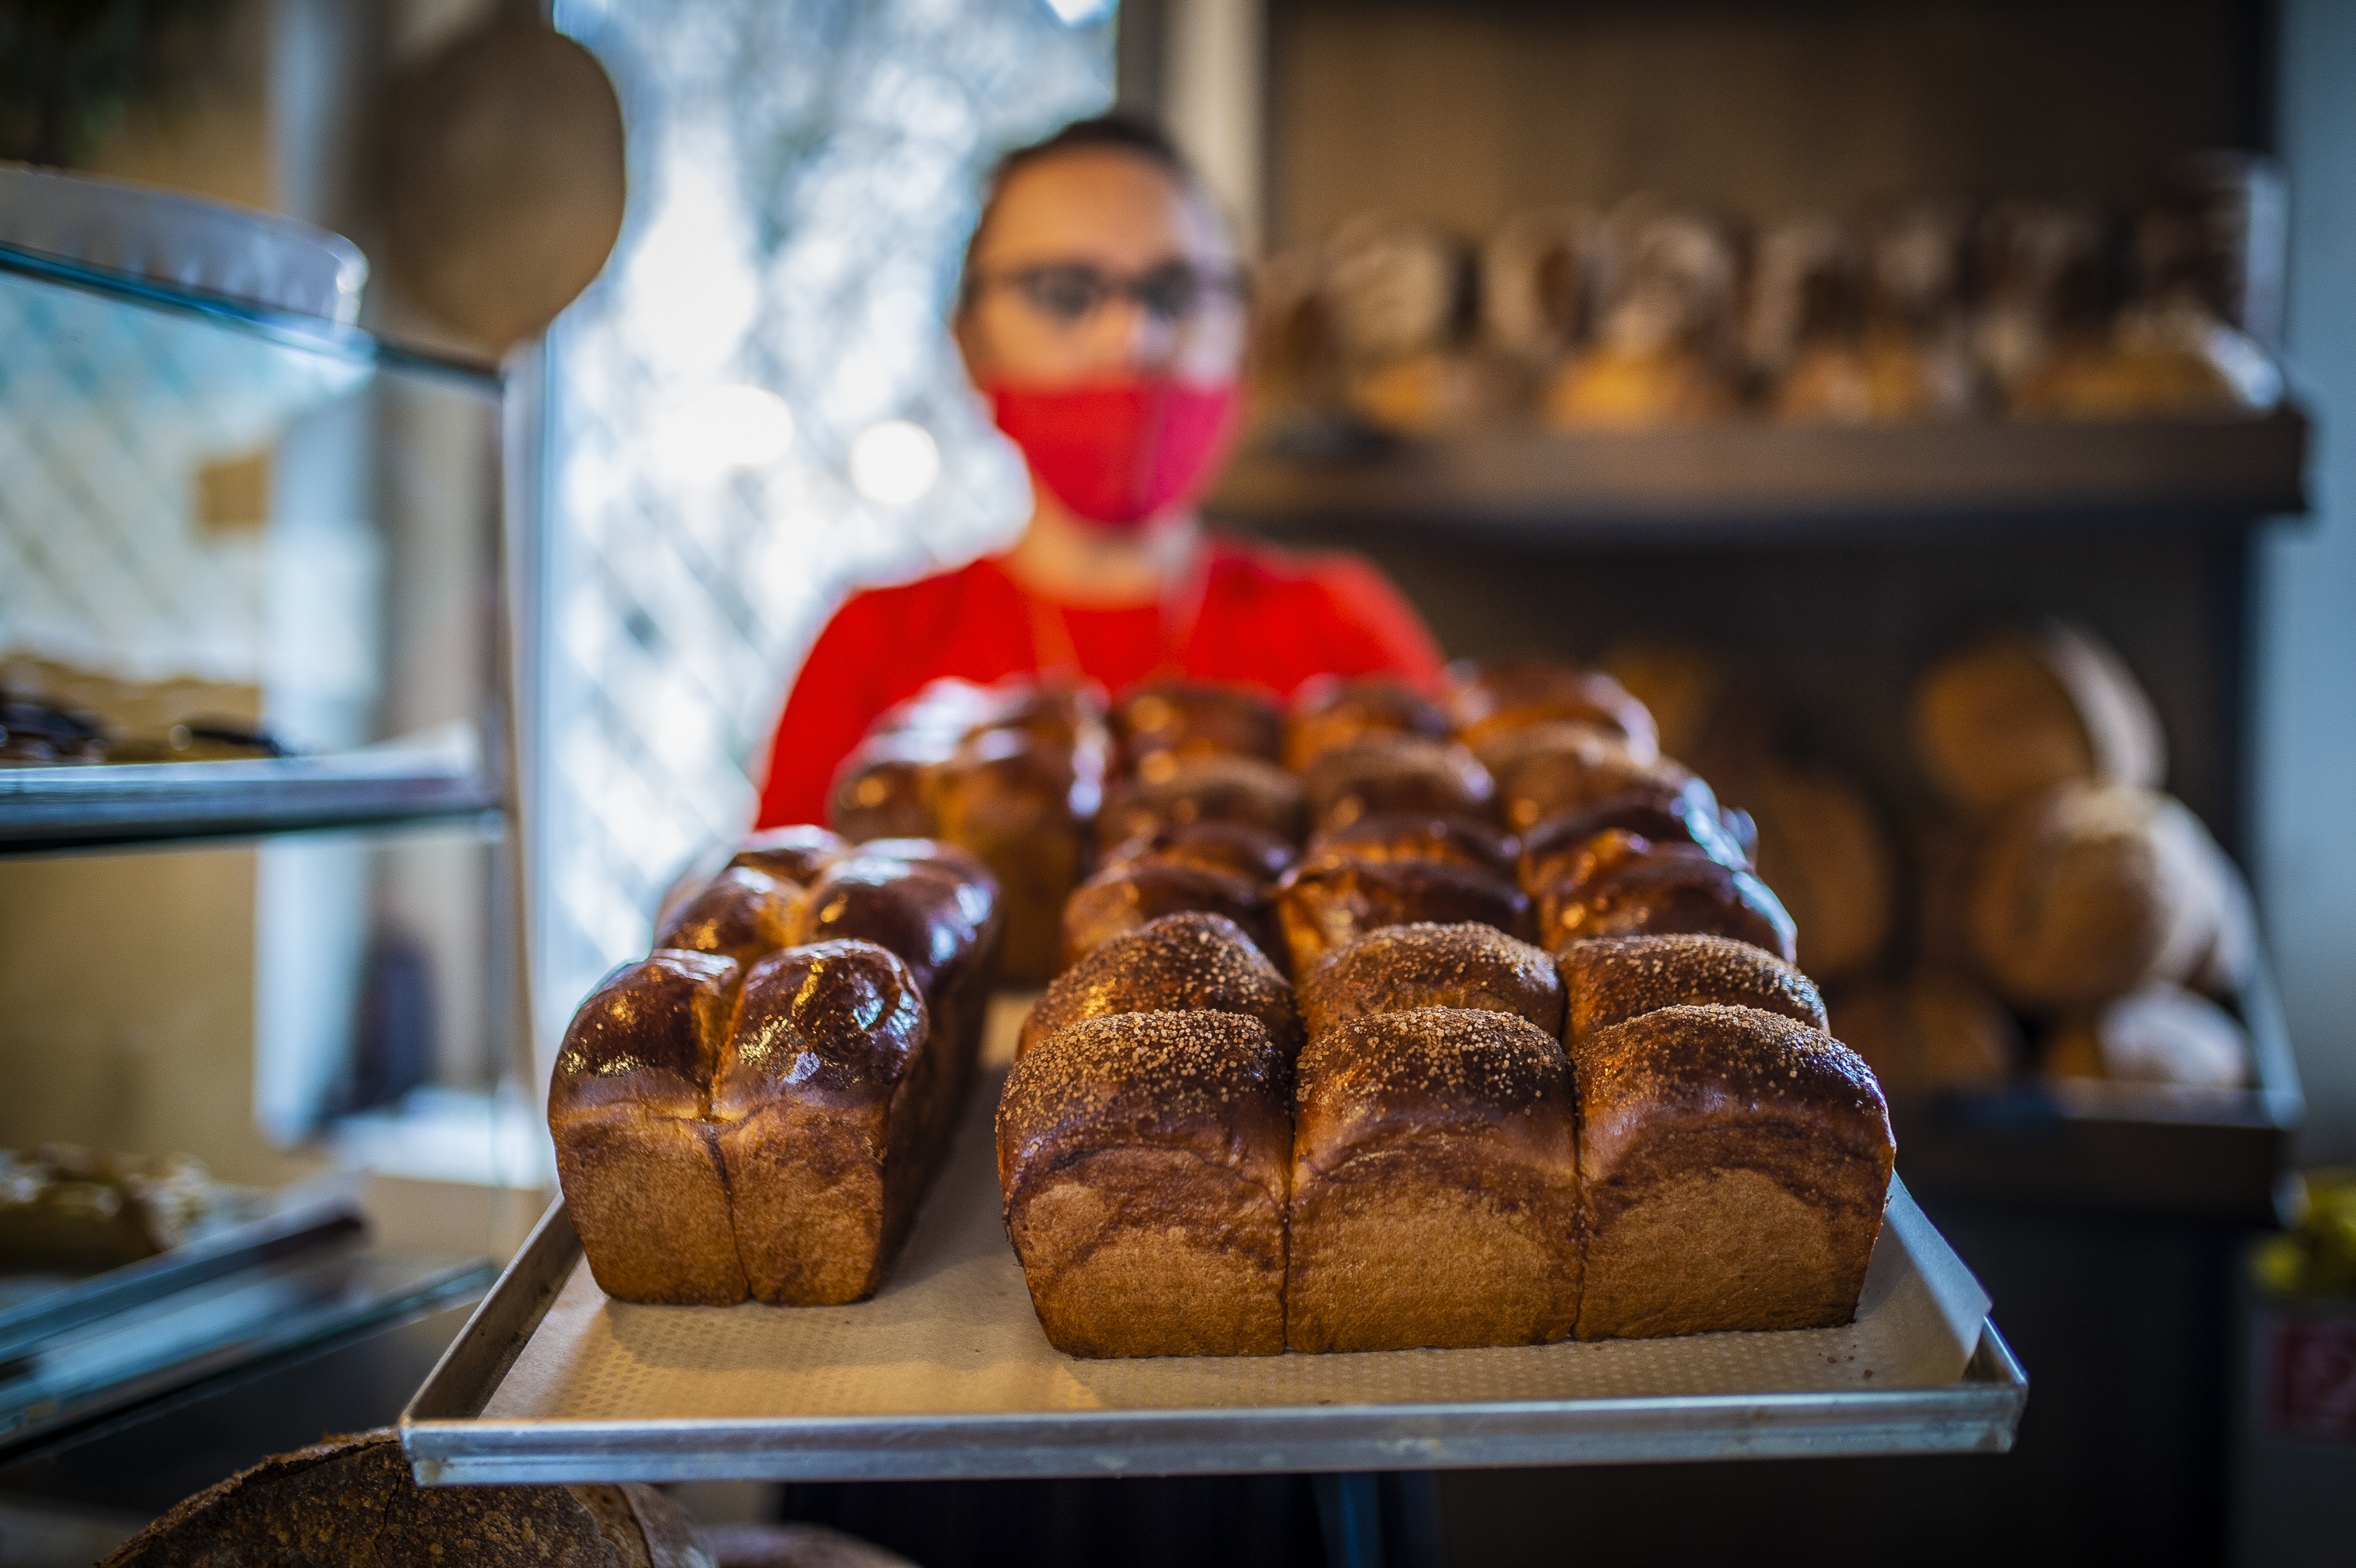 Francia falusi pékség a Gellérthegyen – Megnyitott a Chez Matild